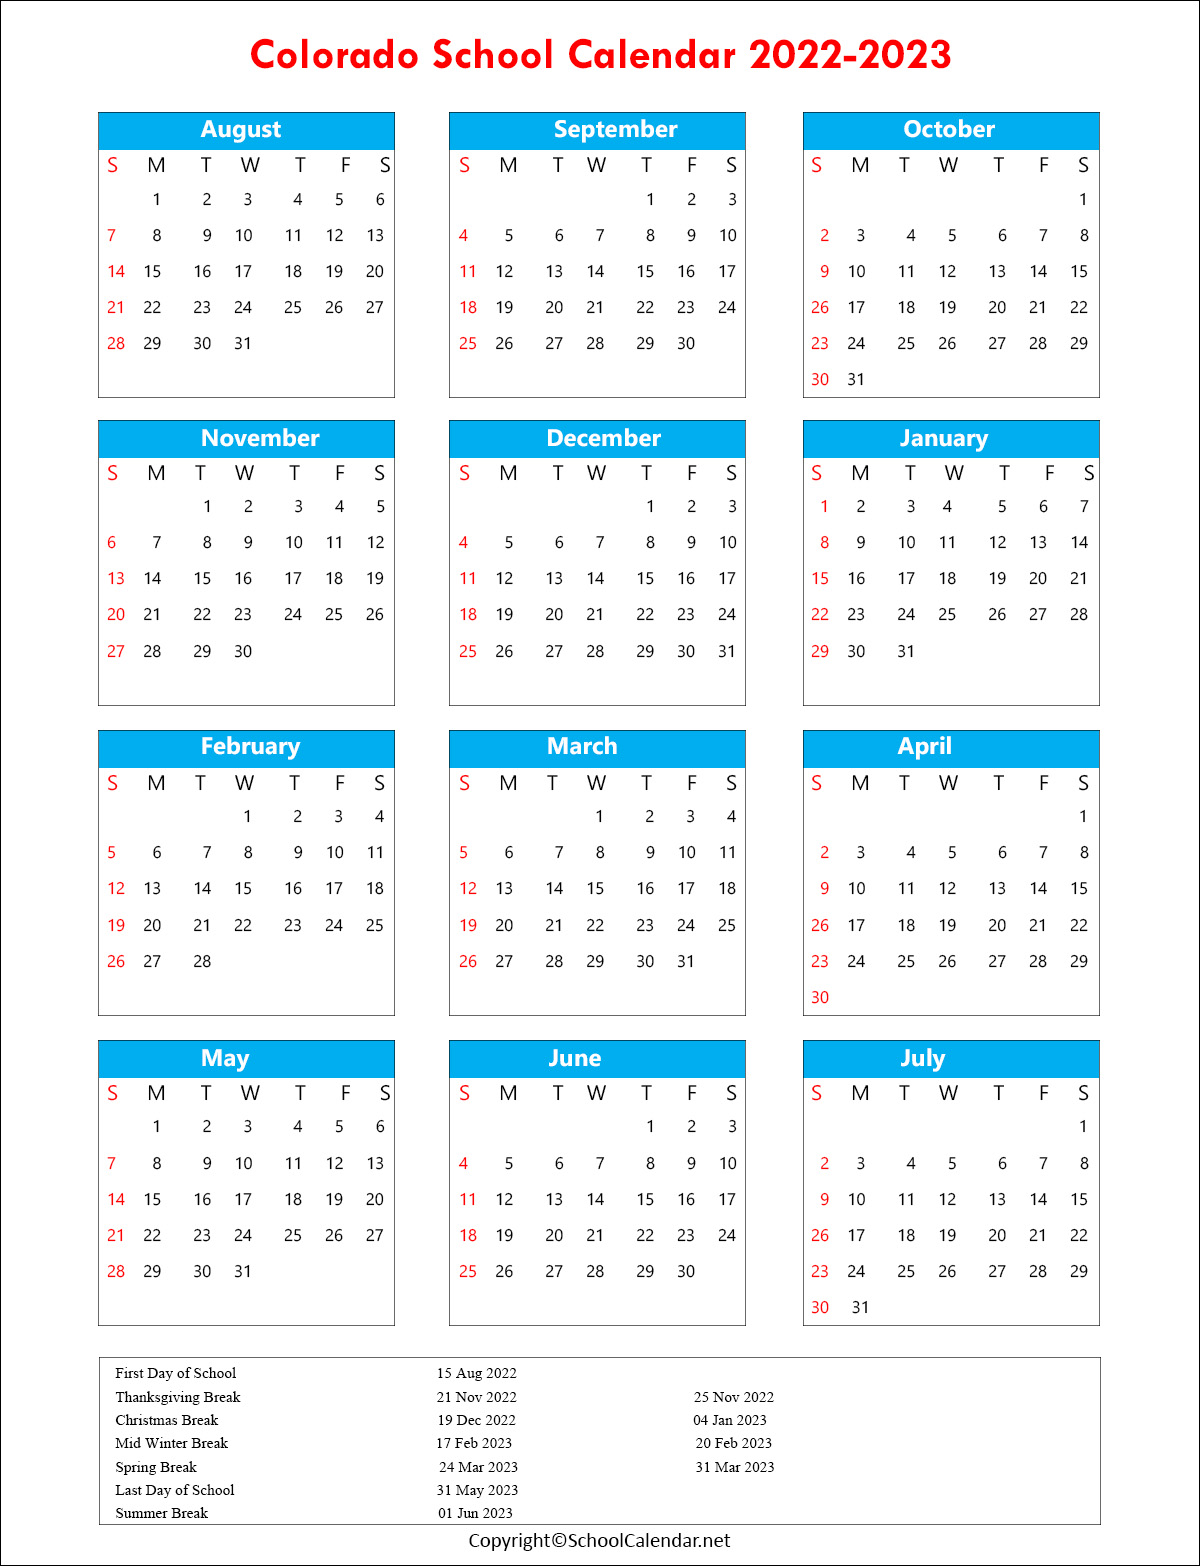 Colorado School Holiday Calendar 2022